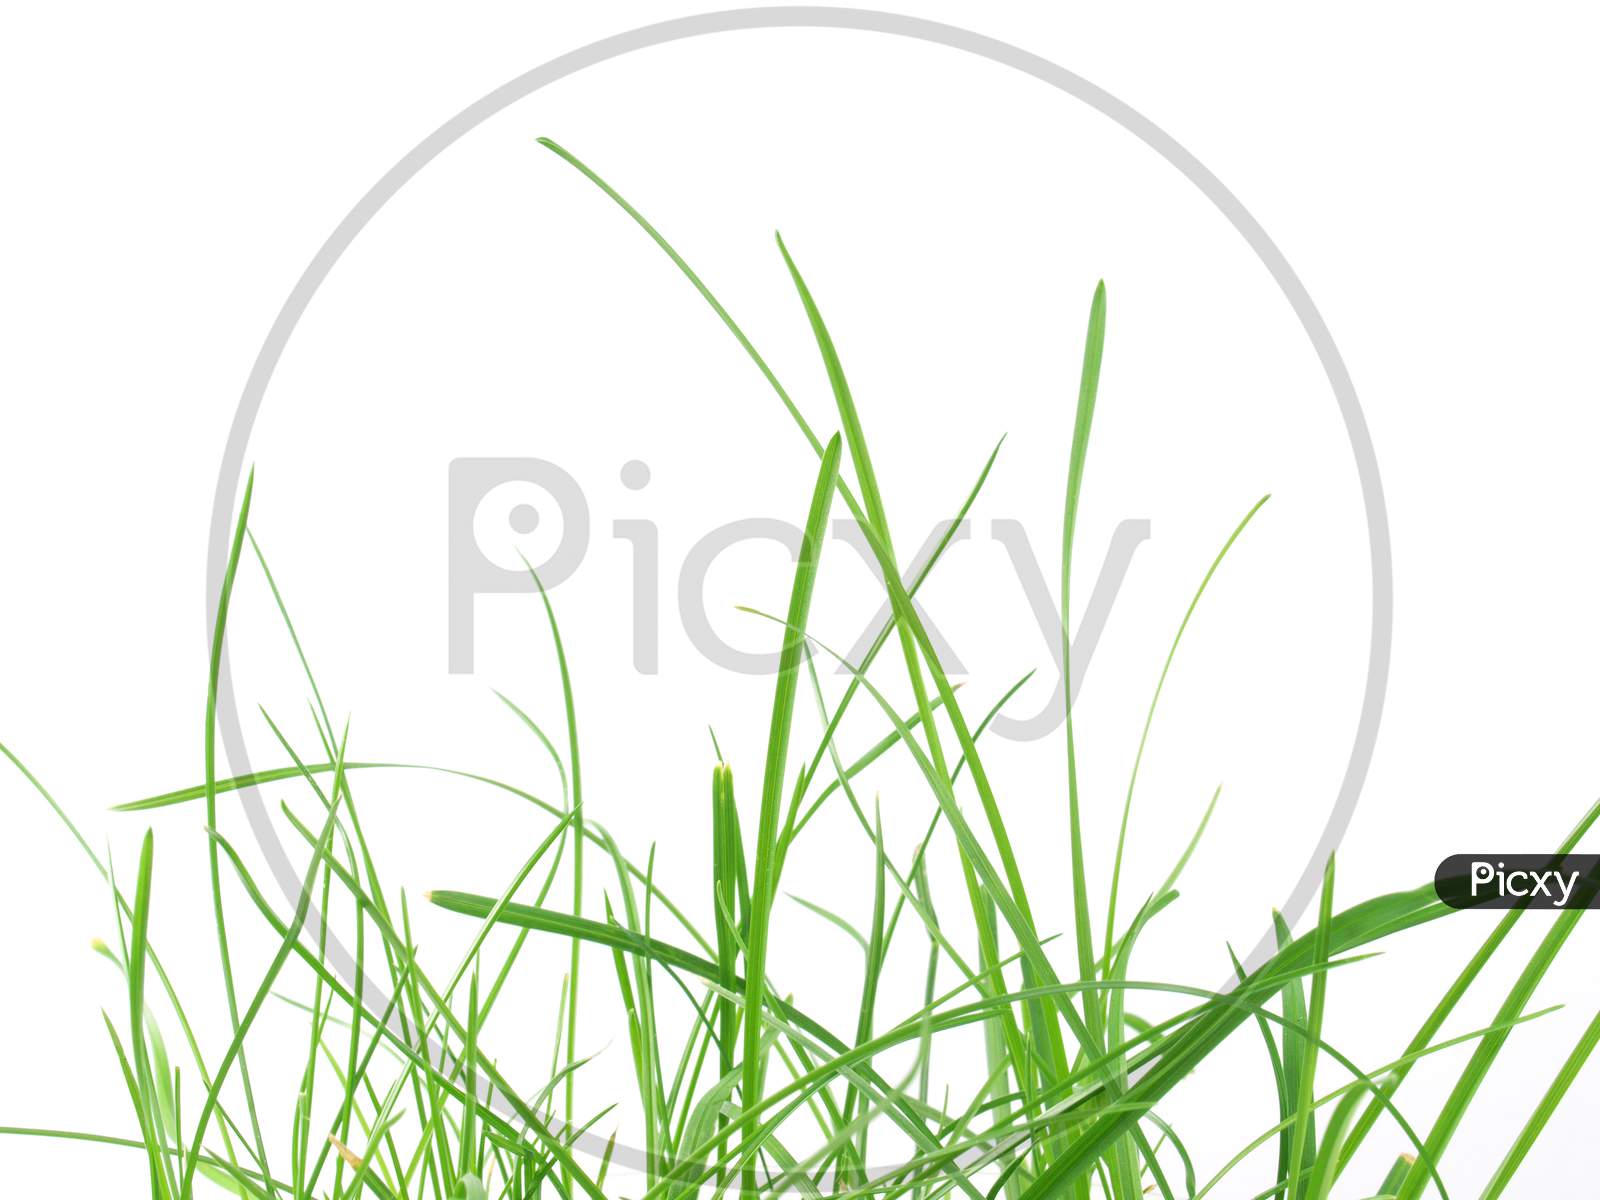 Green Grass Meadow